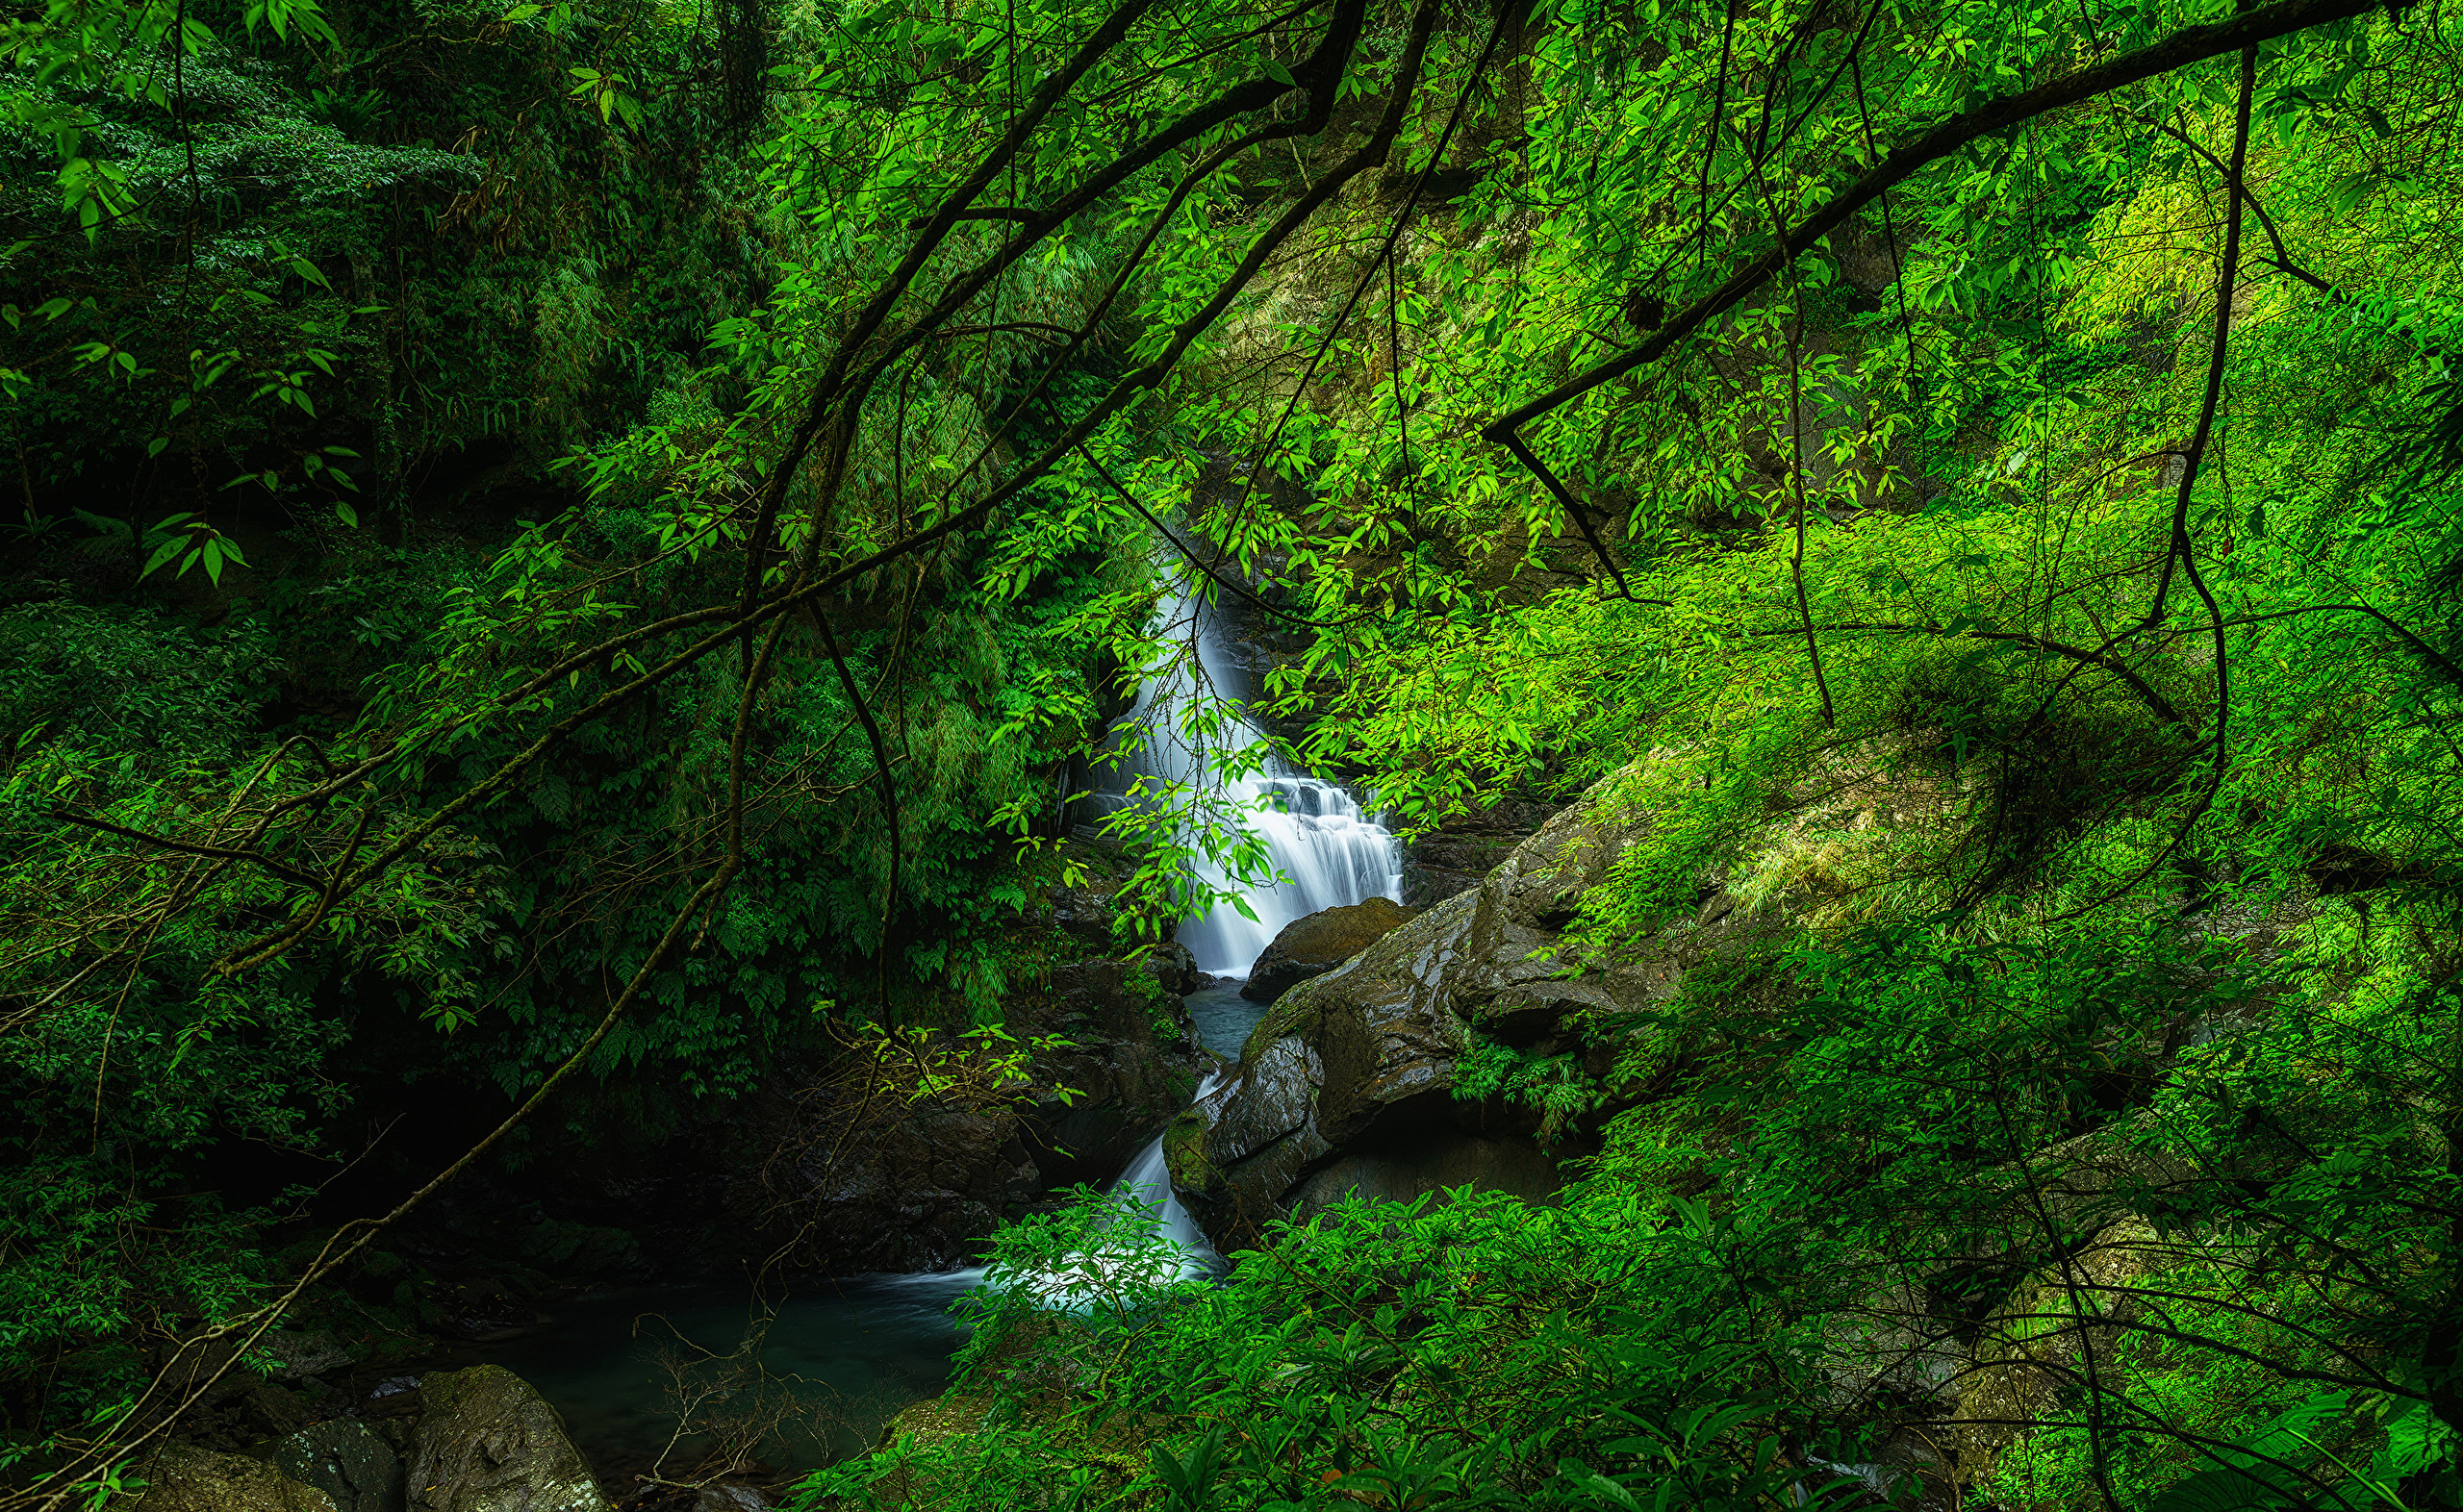 Скачать обои бесплатно Водопады, Водопад, Зелень, Земля/природа картинка на рабочий стол ПК